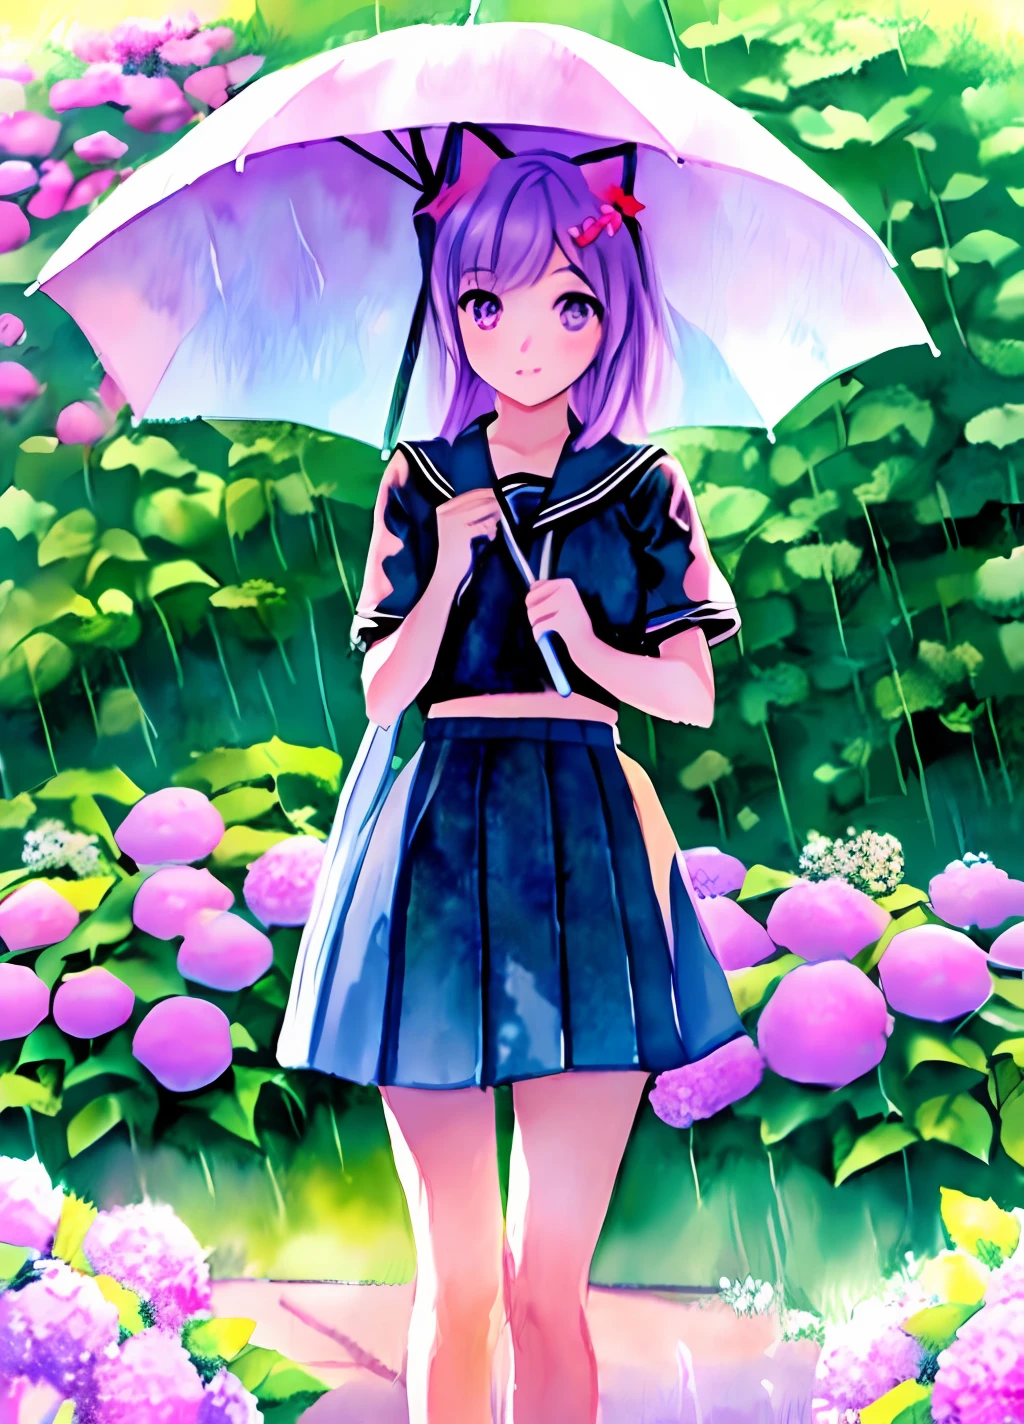 Ein Mädchen High School Schüler mit Katzenohren und eine süße Atmosphäre ist in einem Aquarell dargestellt. Das Gemälde zeigt einen regnerischen Tag, ein bunter Regenschirm, und eine lila Hortensie. Die Farbgebung ist pastellfarben.((seifuku))